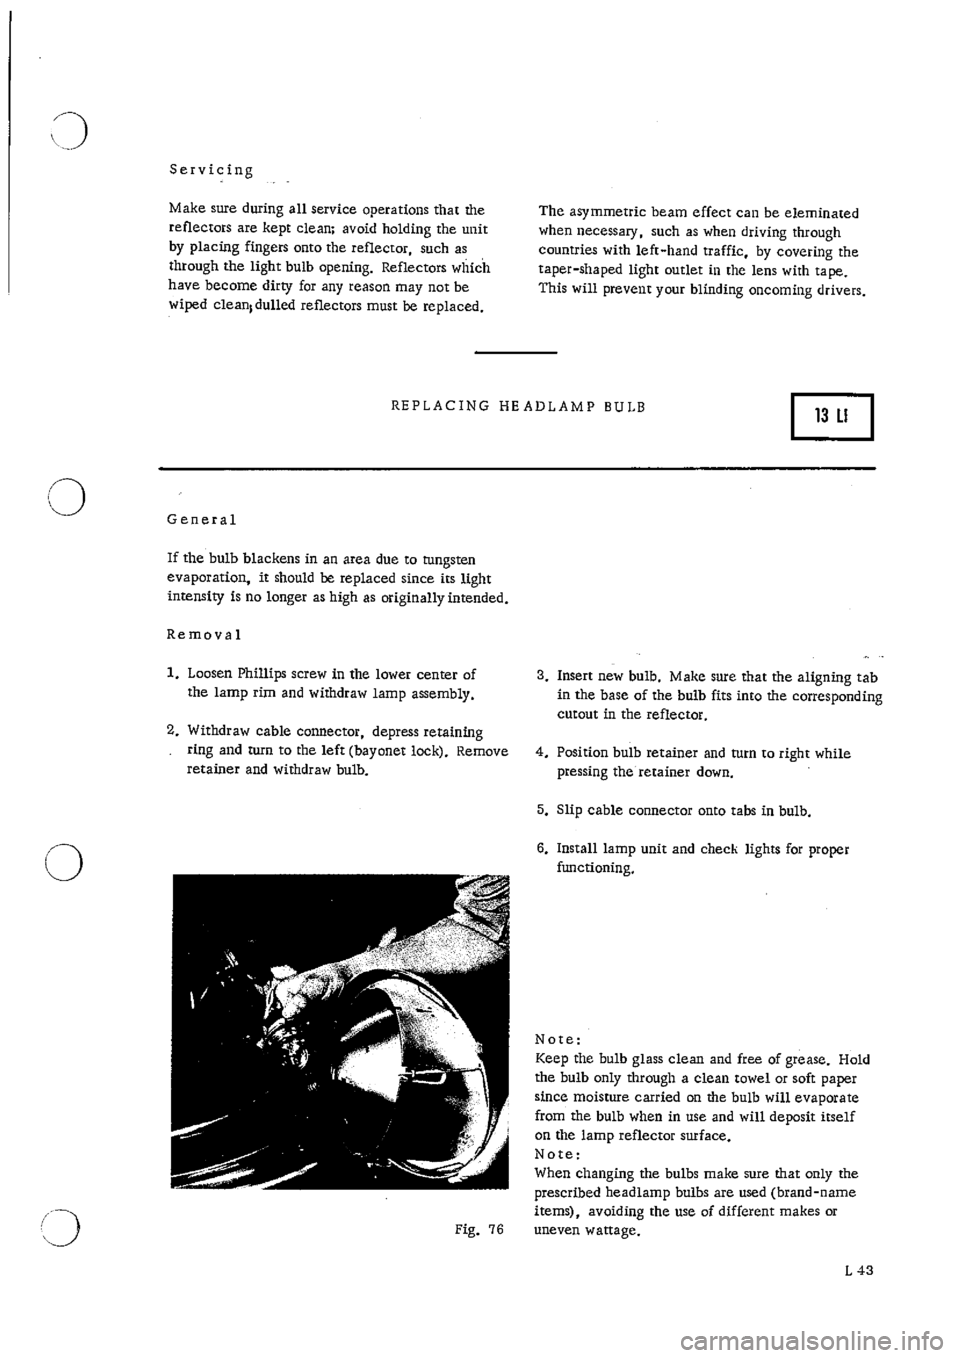 PORSCHE 911 1965 1.G Electrical Service Manual 